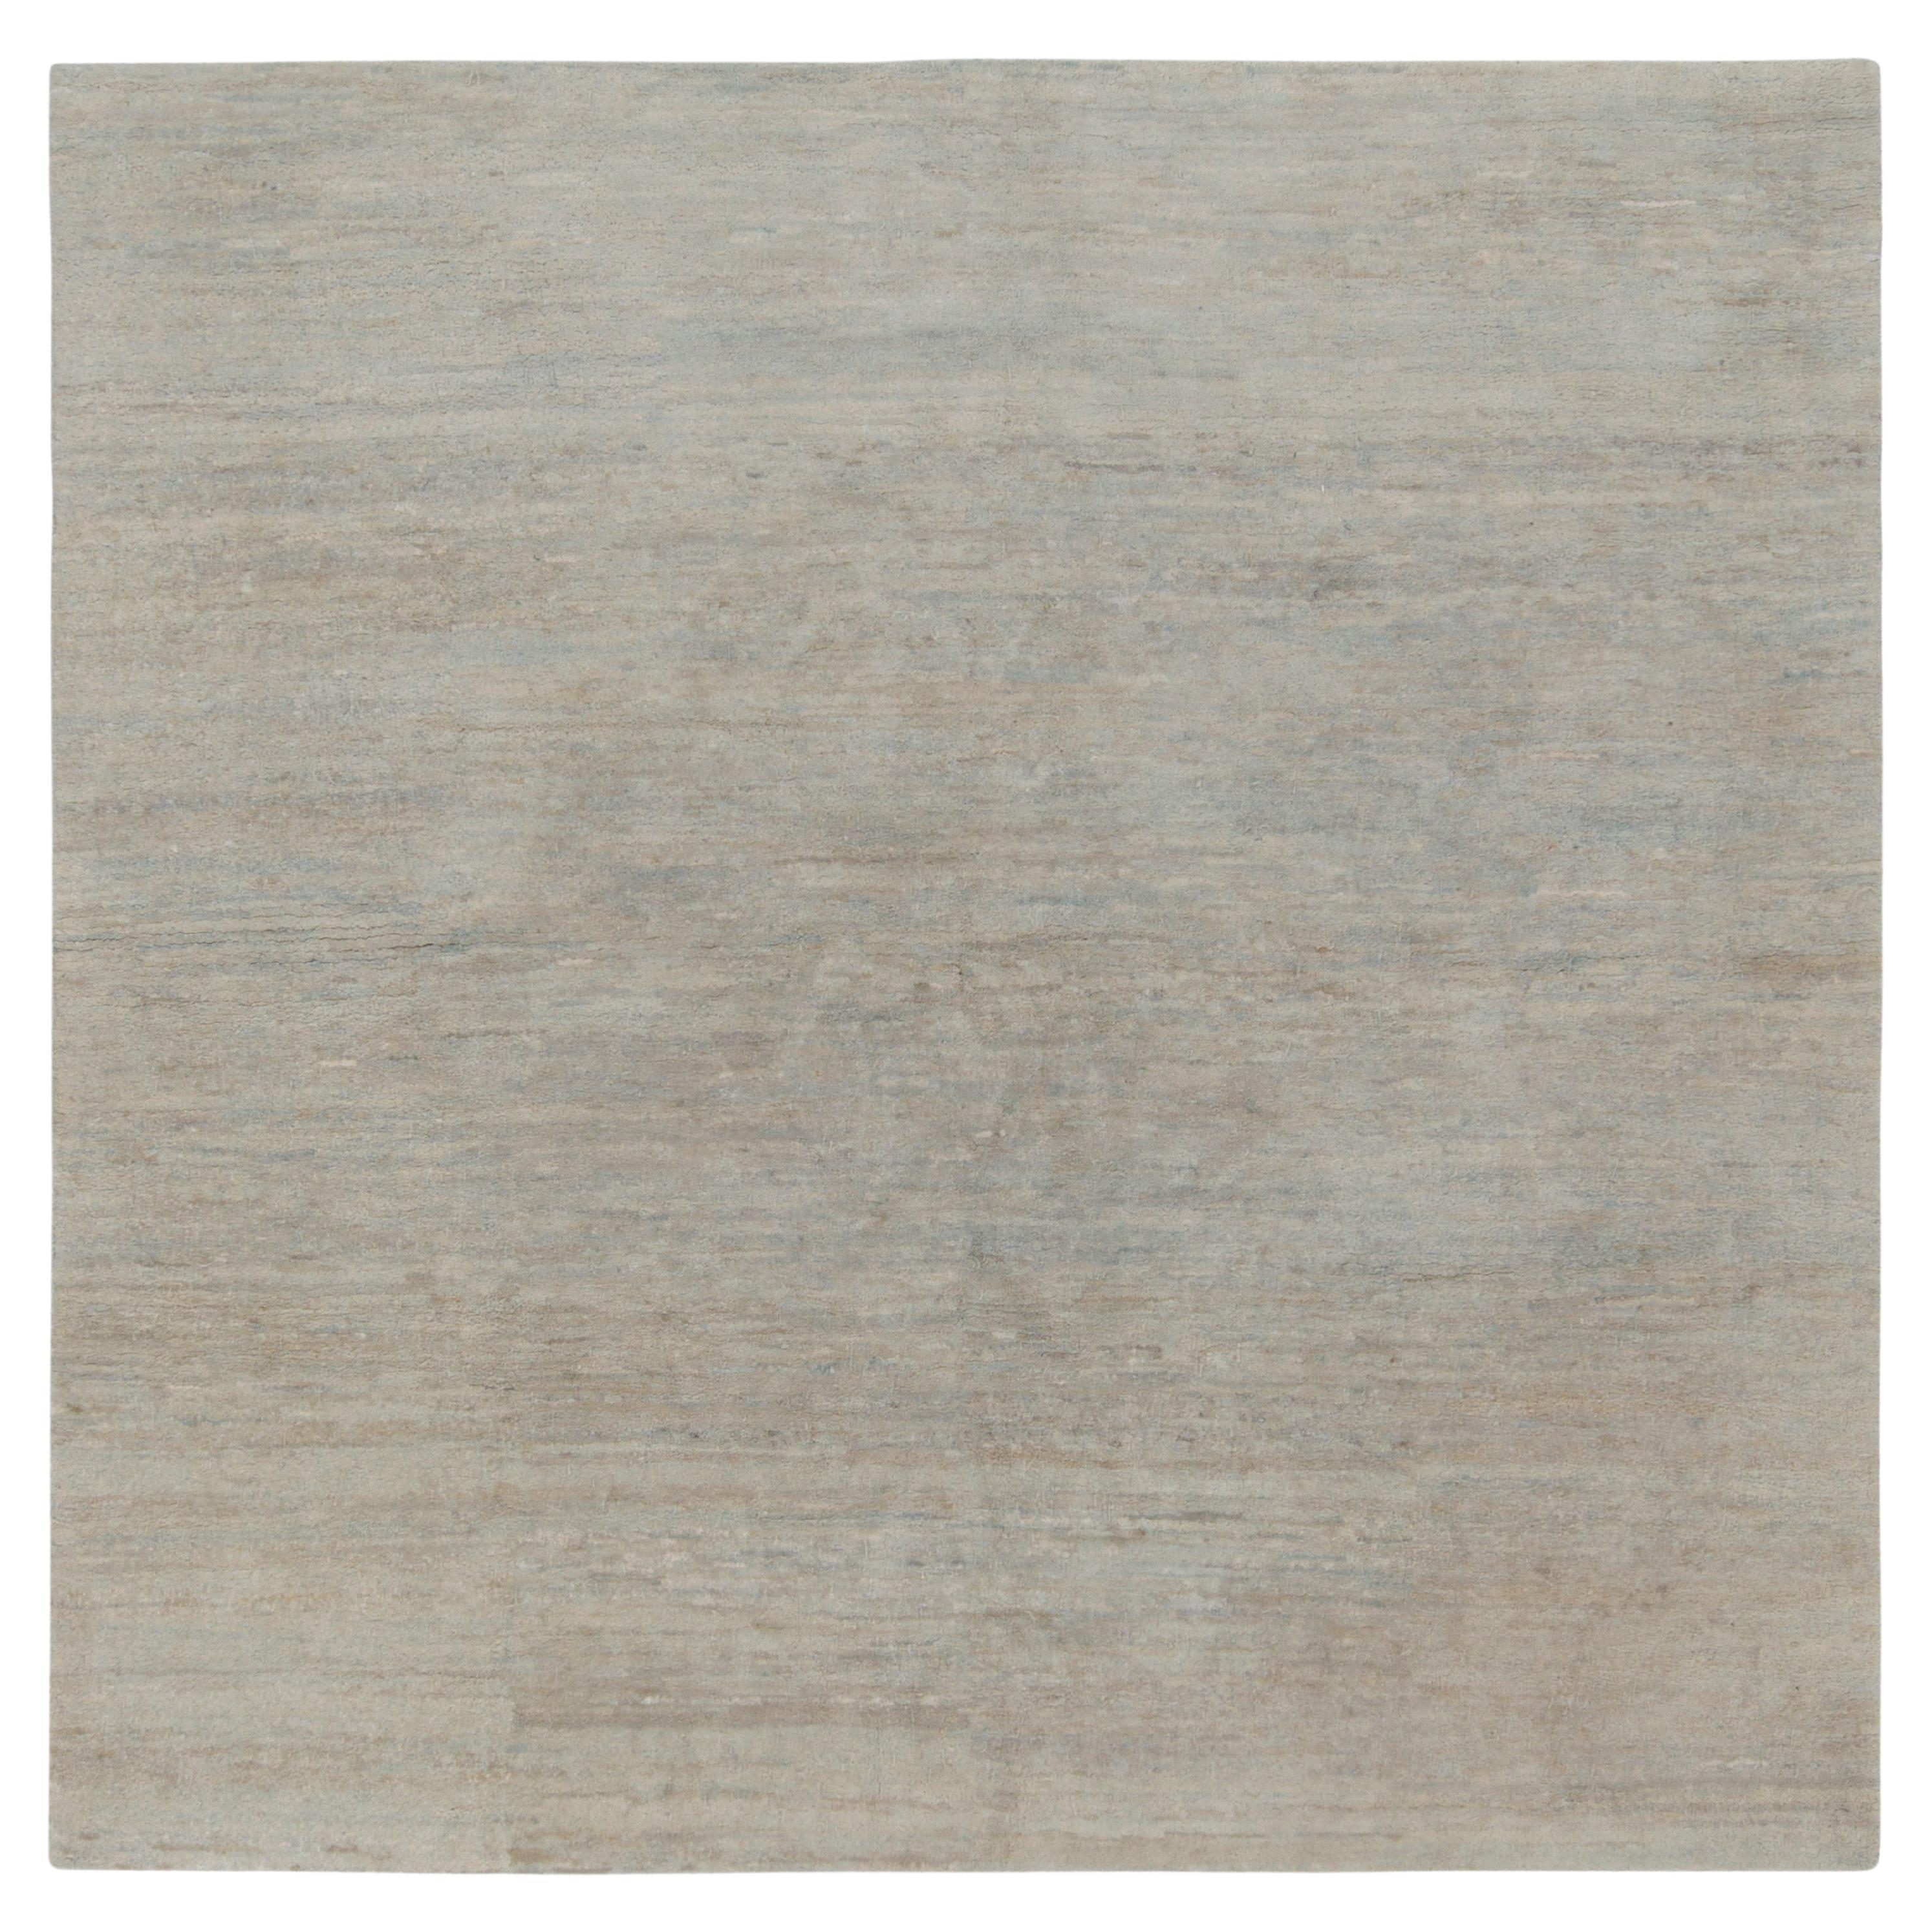 Rug & Kilim präsentiert seine raffinierte Interpretation moderner Ästhetik mit diesem eleganten, unifarbenen grauen Teppich in quadratischer Form aus unserer Texture of Color Kollektion. Das zeitgenössische Stück besticht durch eine ausgereifte